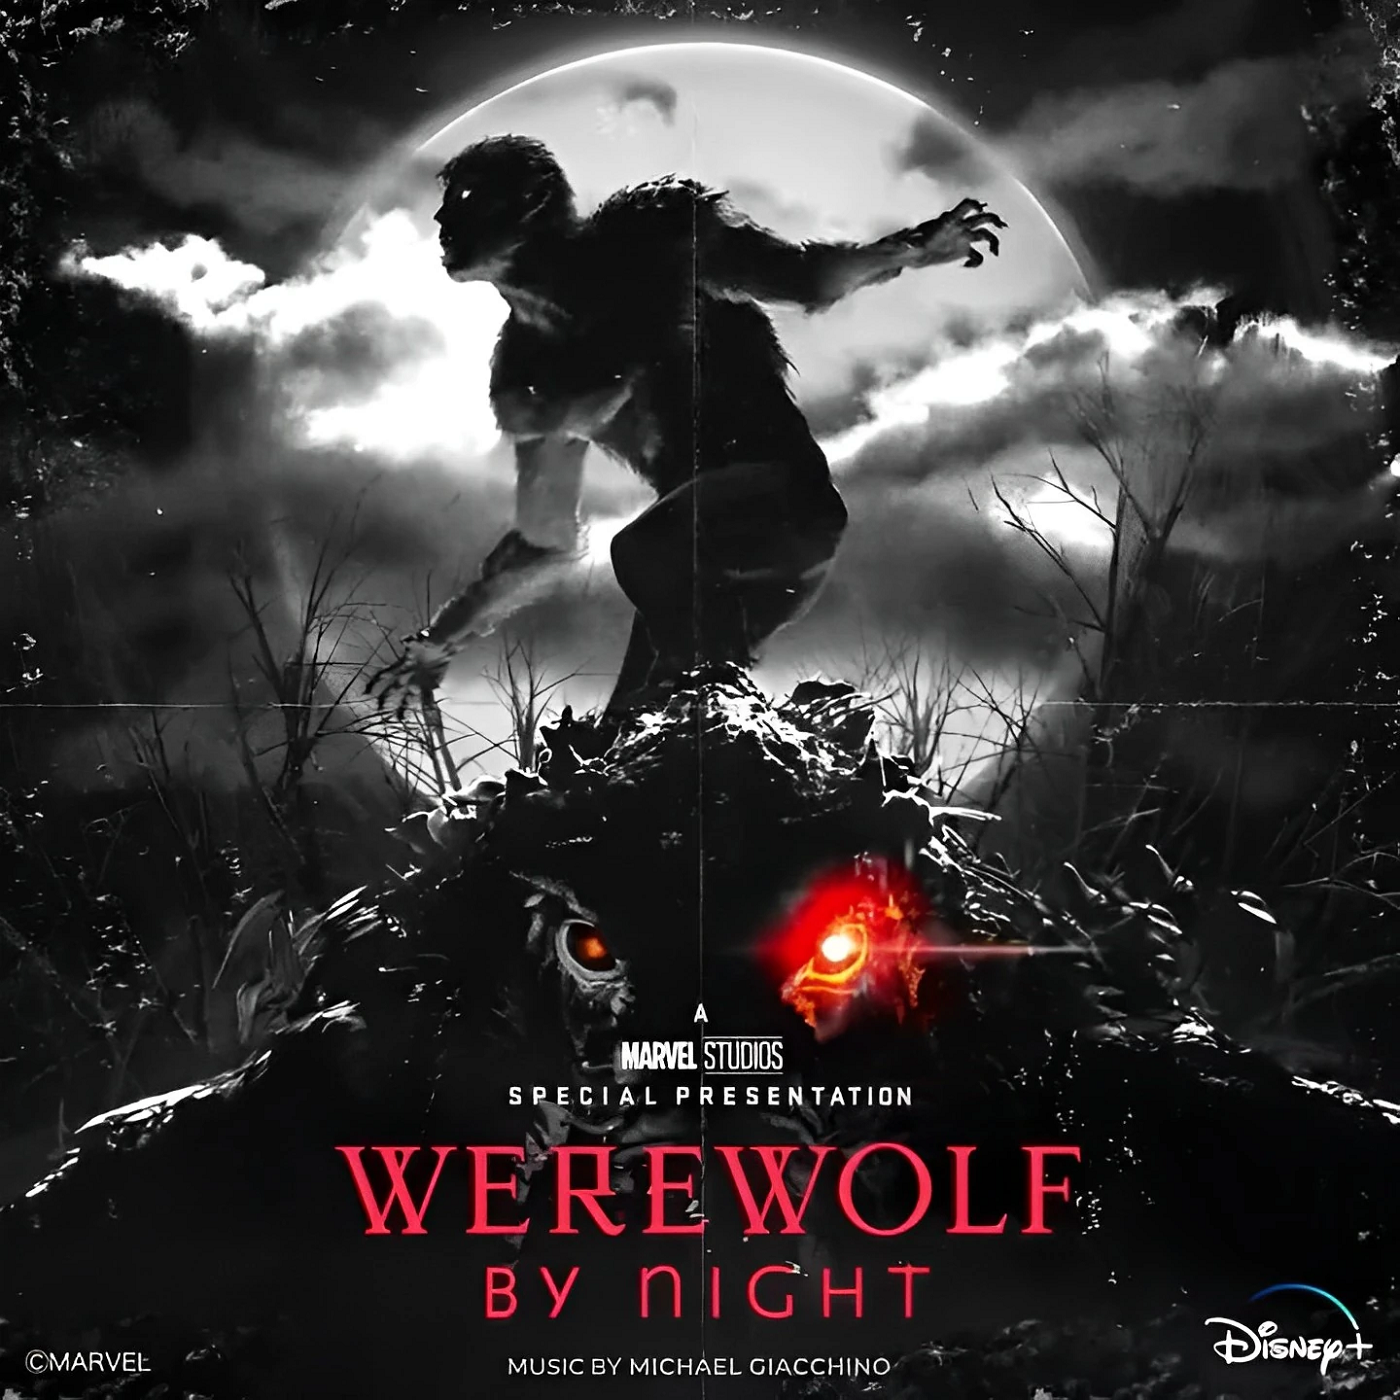 Werewolf by Night - Wikidata